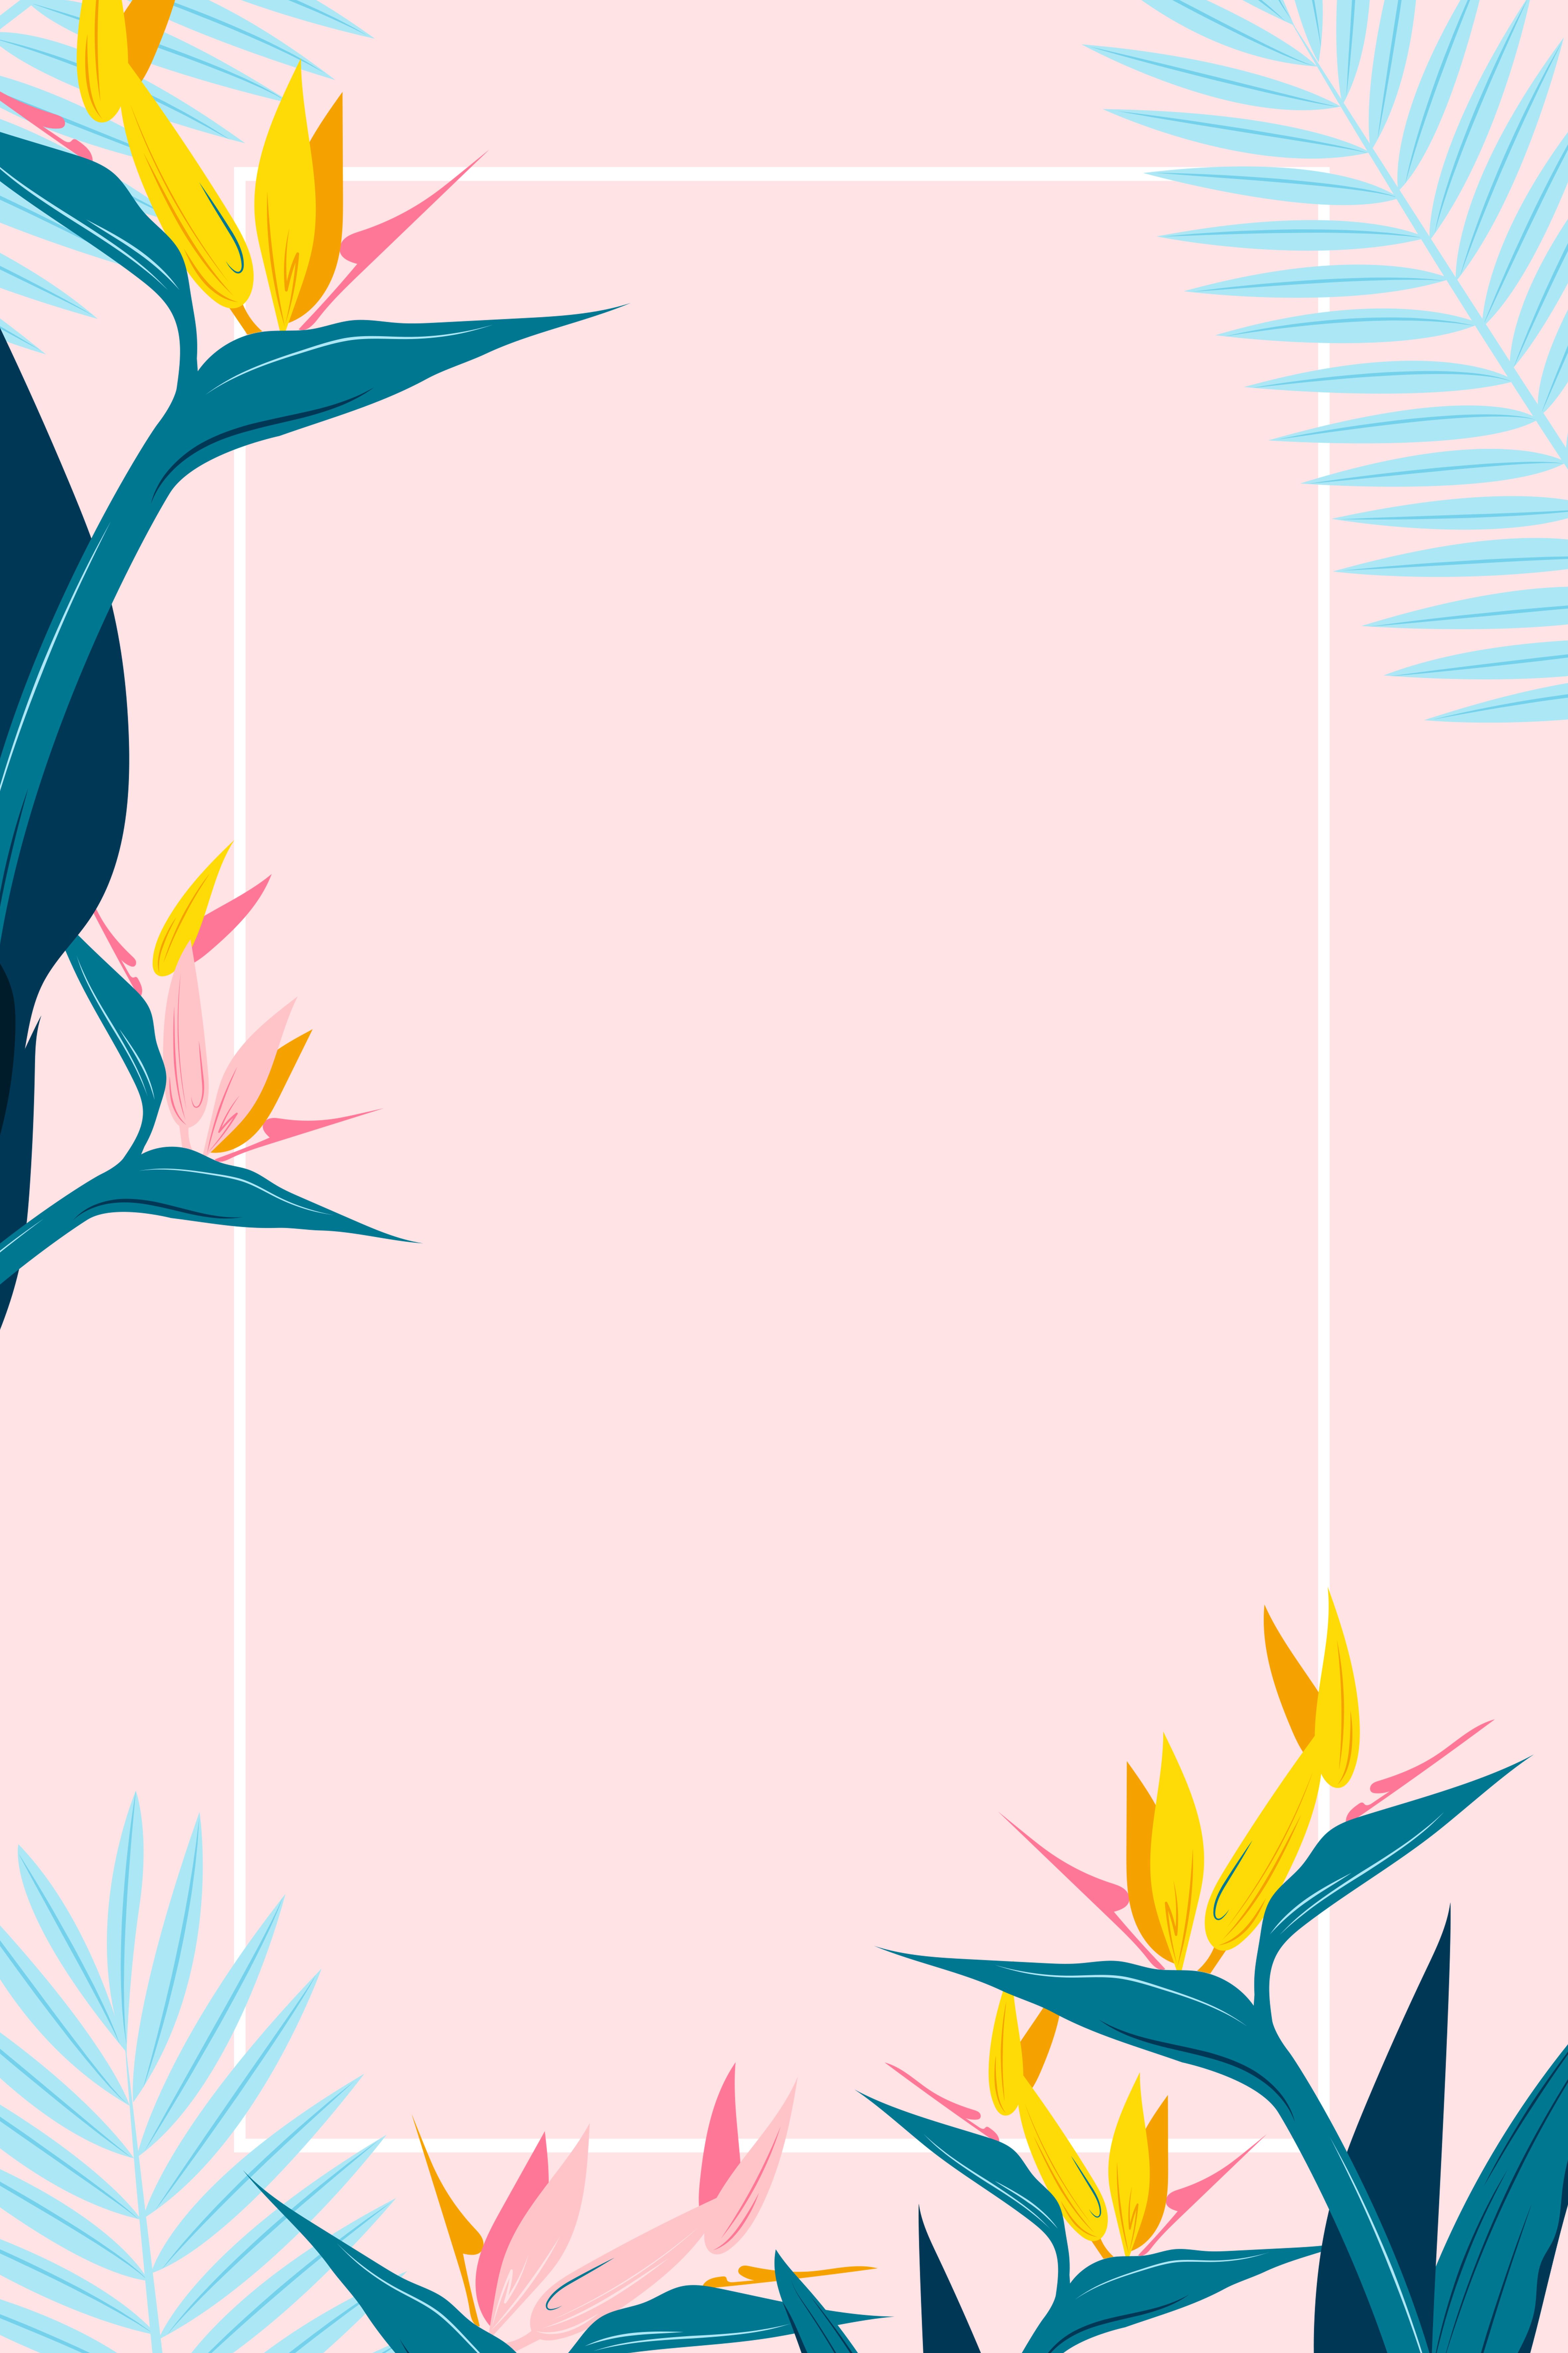 Fresh Summer Women S Promotional Poster Background. Flower background wallpaper, Cute wallpaper background, Poster design